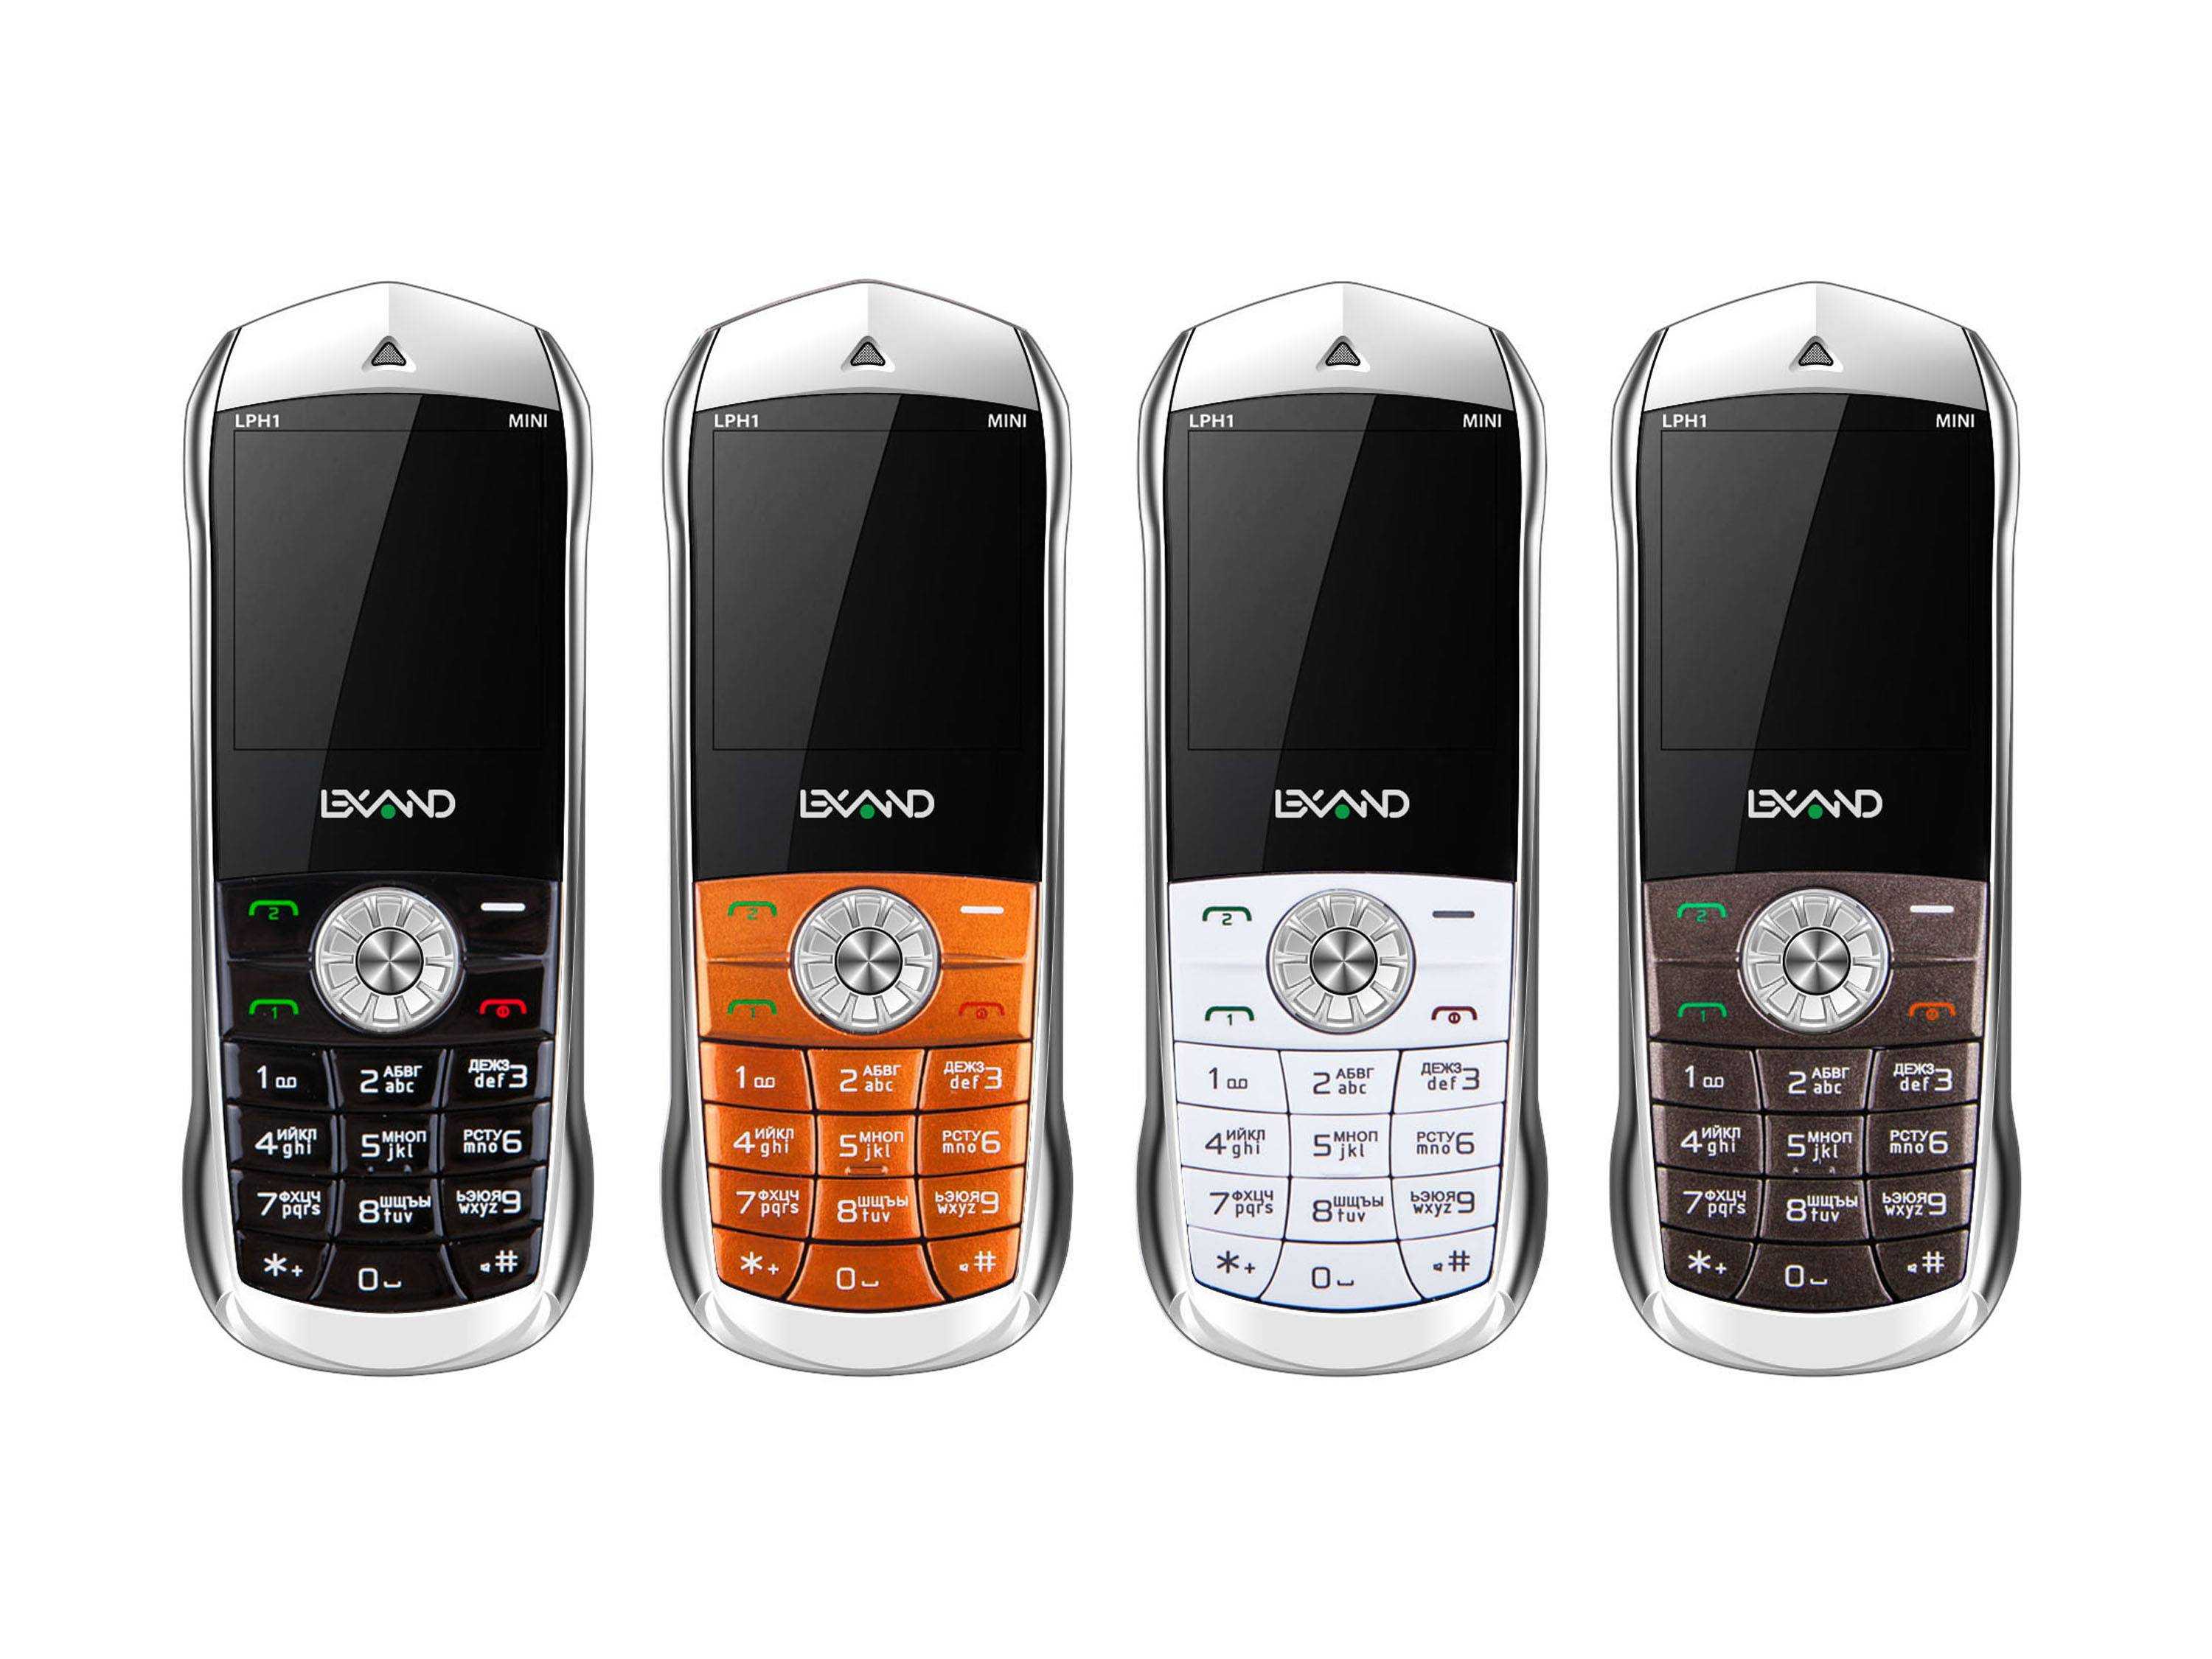 Купить мобильные недорогие в москве. Lexand lph1 Mini. Телефон мини Lexand lph1. Мини телефон Lexand Mini lph1. Сотовый мини-телефон Lexand lph1 Mini оранжевый.